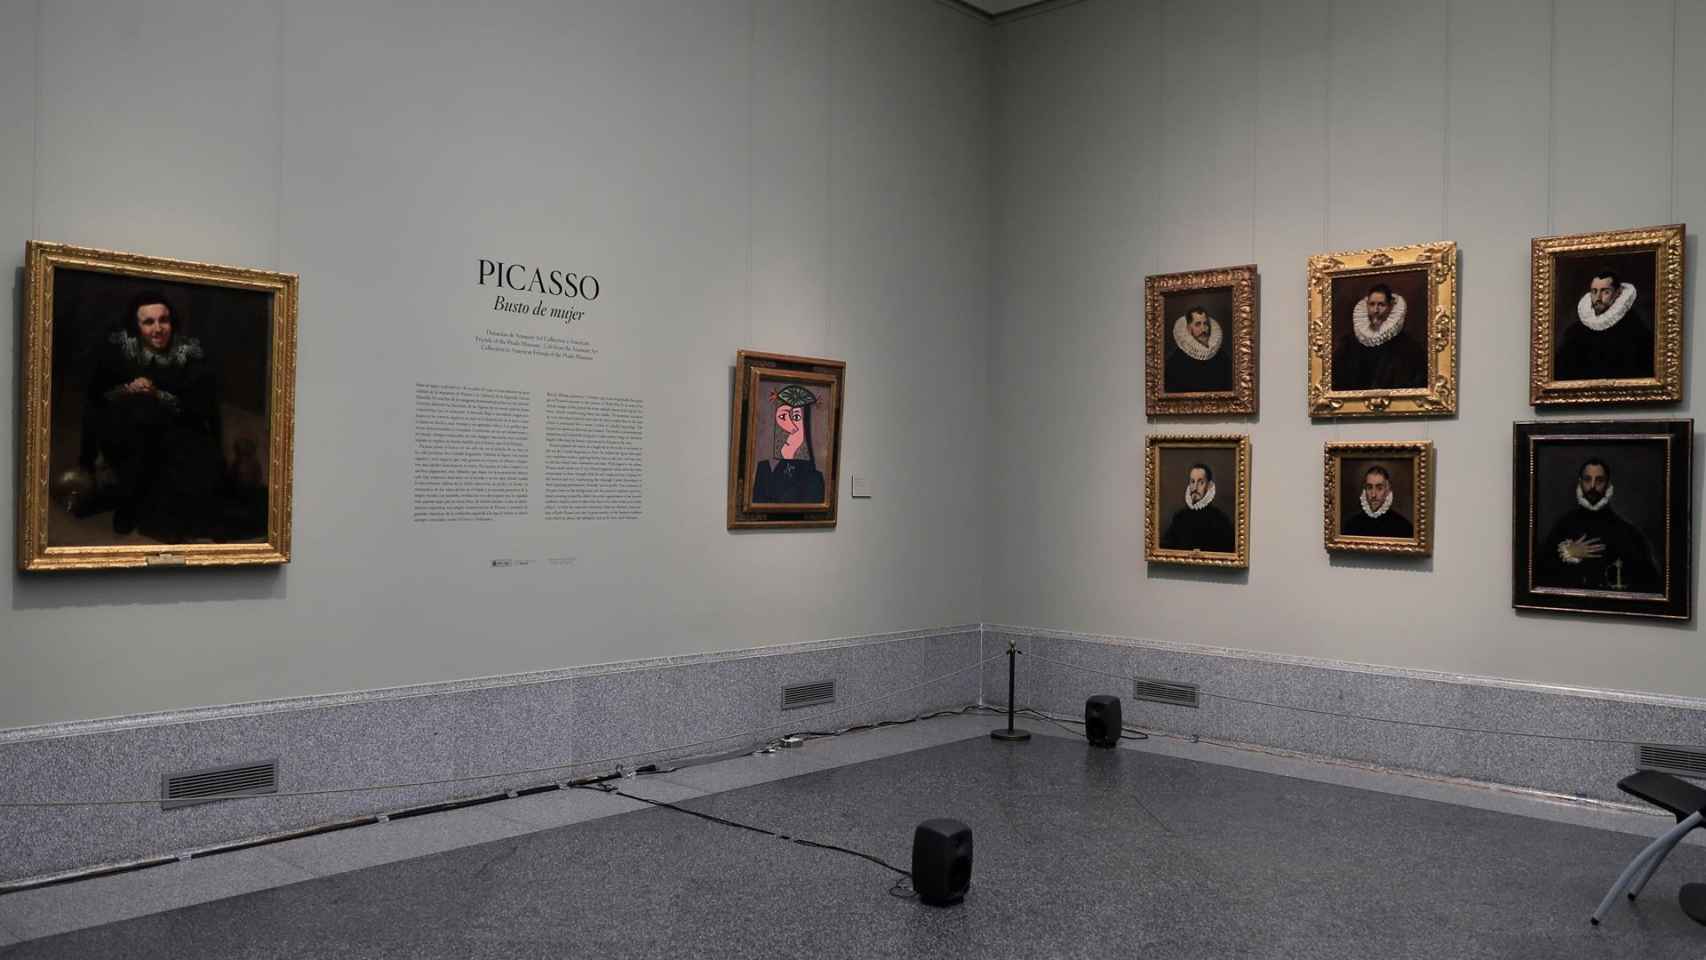 Picasso vuelve al Museo del Prado con 'Busto de mujer 43'. La pinacoteca presenta en sociedad el cuadro, que ha sido depositado por la familia mexicana Arango Montfull